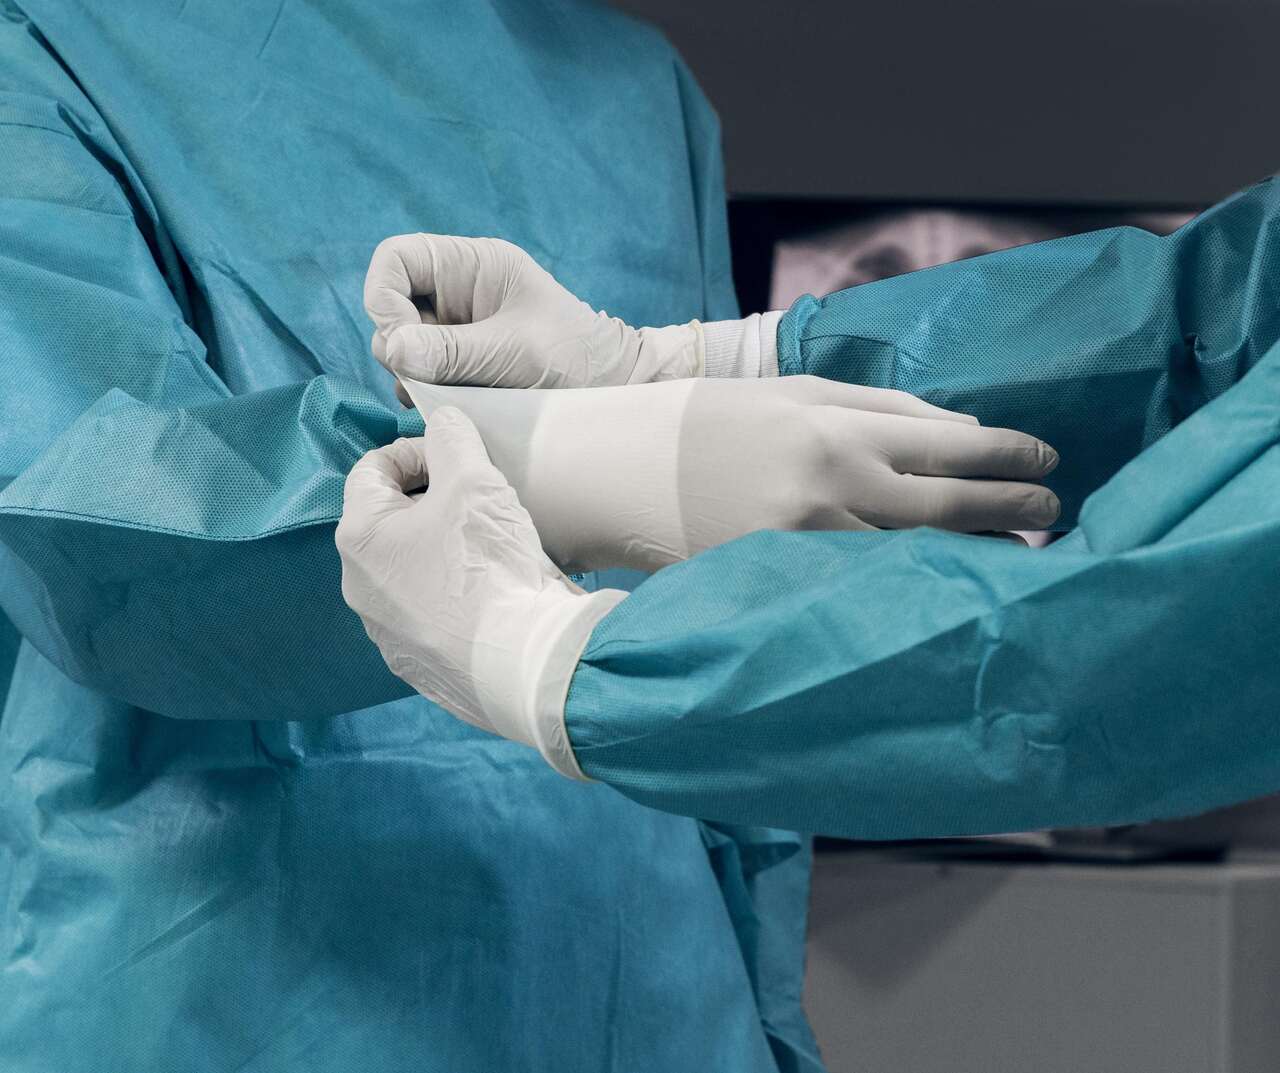 Urologia Goiânia - Como é feita a cirurgia de frenuloplastia